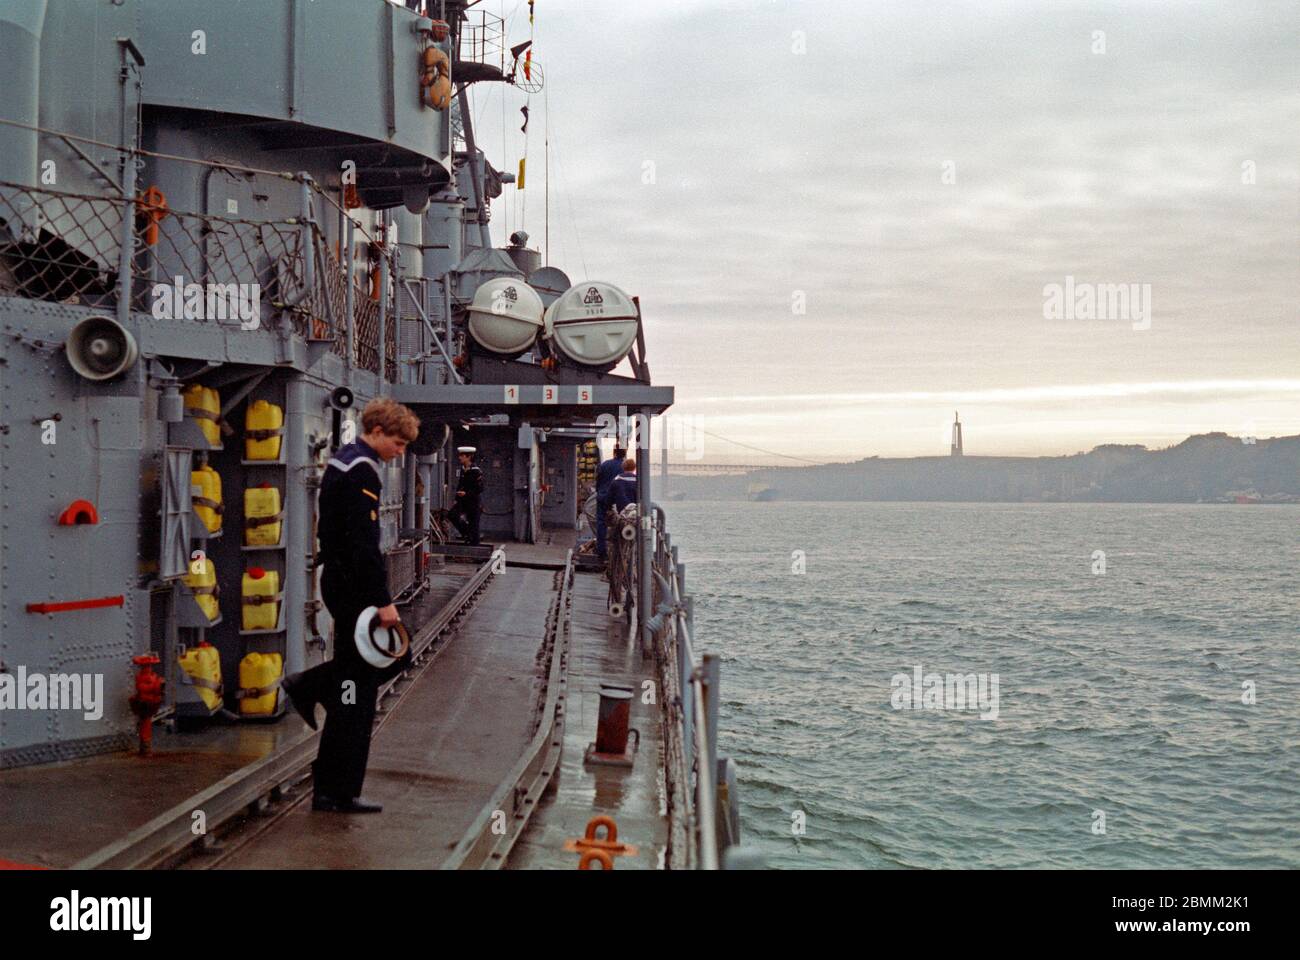 Cacciatorpediniere 5 della Marina militare tedesca che arivano al porto, 03 febbraio 1982, Lisbona, Portogallo Foto Stock